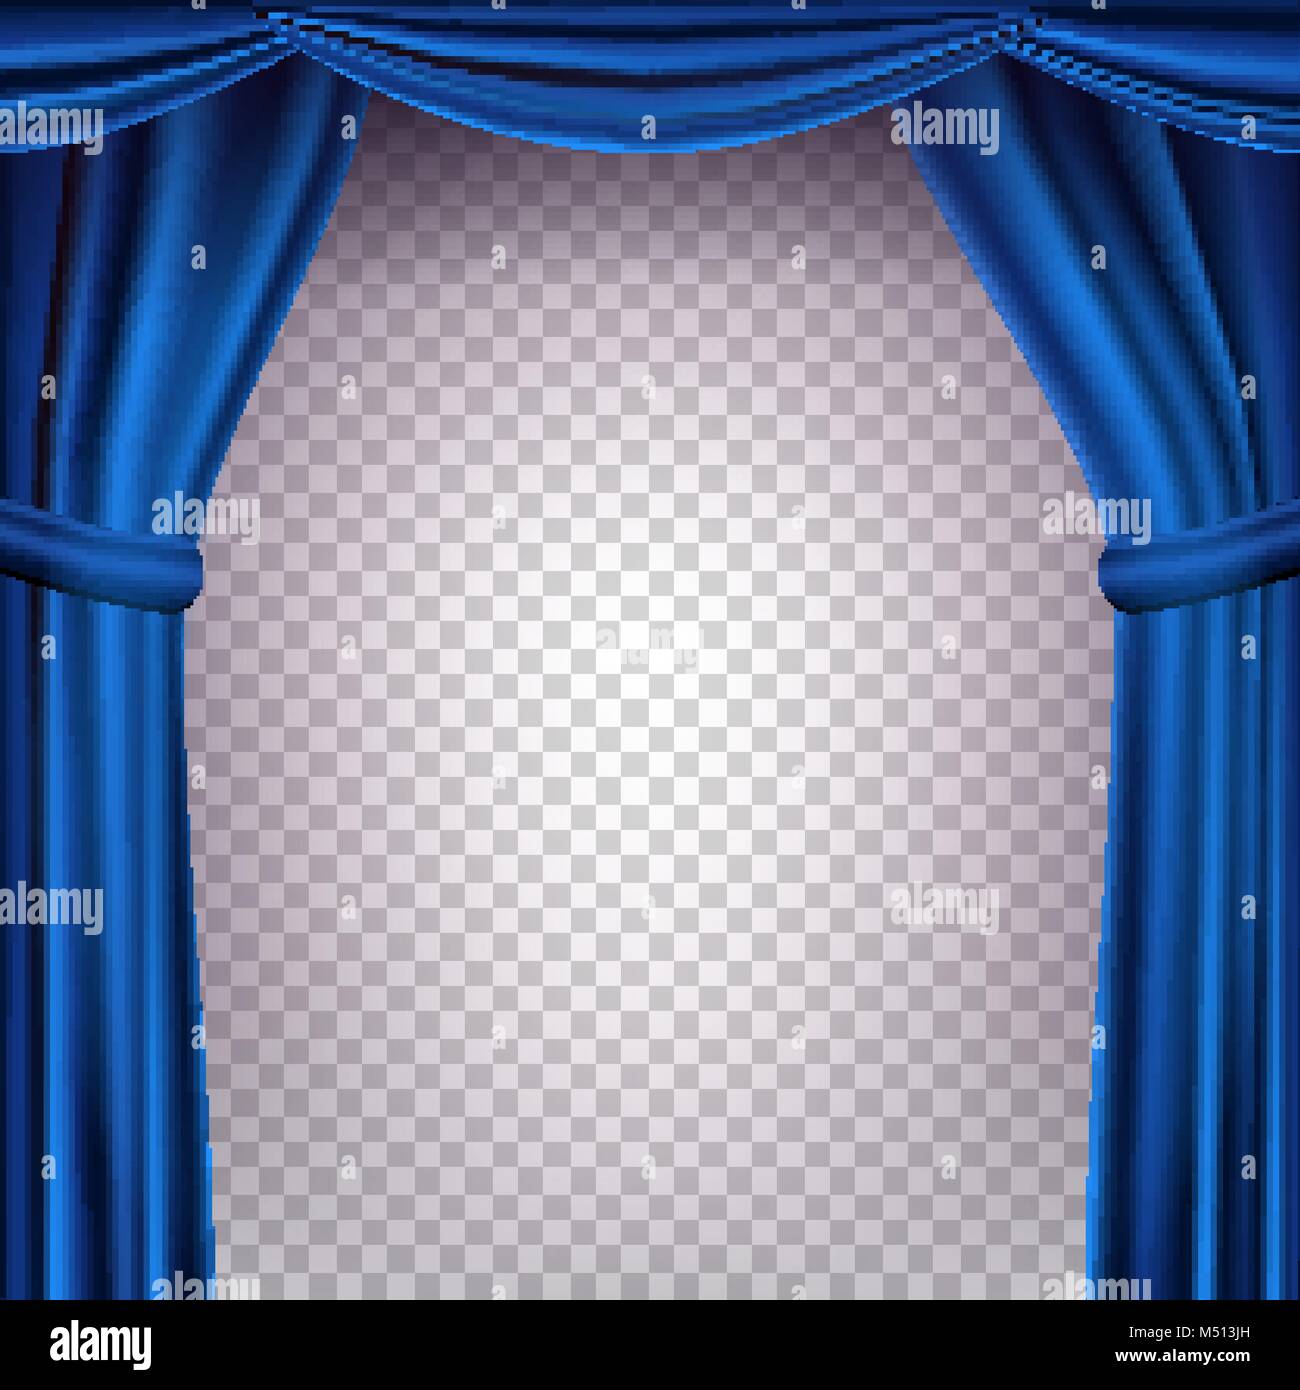 Blau Theater Vorhang Vektor. Transparenten Hintergrund. Banner für Konzert,  Theater. Oper oder Kino leer Seide Phase, Blau Szene. Realistische  Darstellung Stock-Vektorgrafik - Alamy